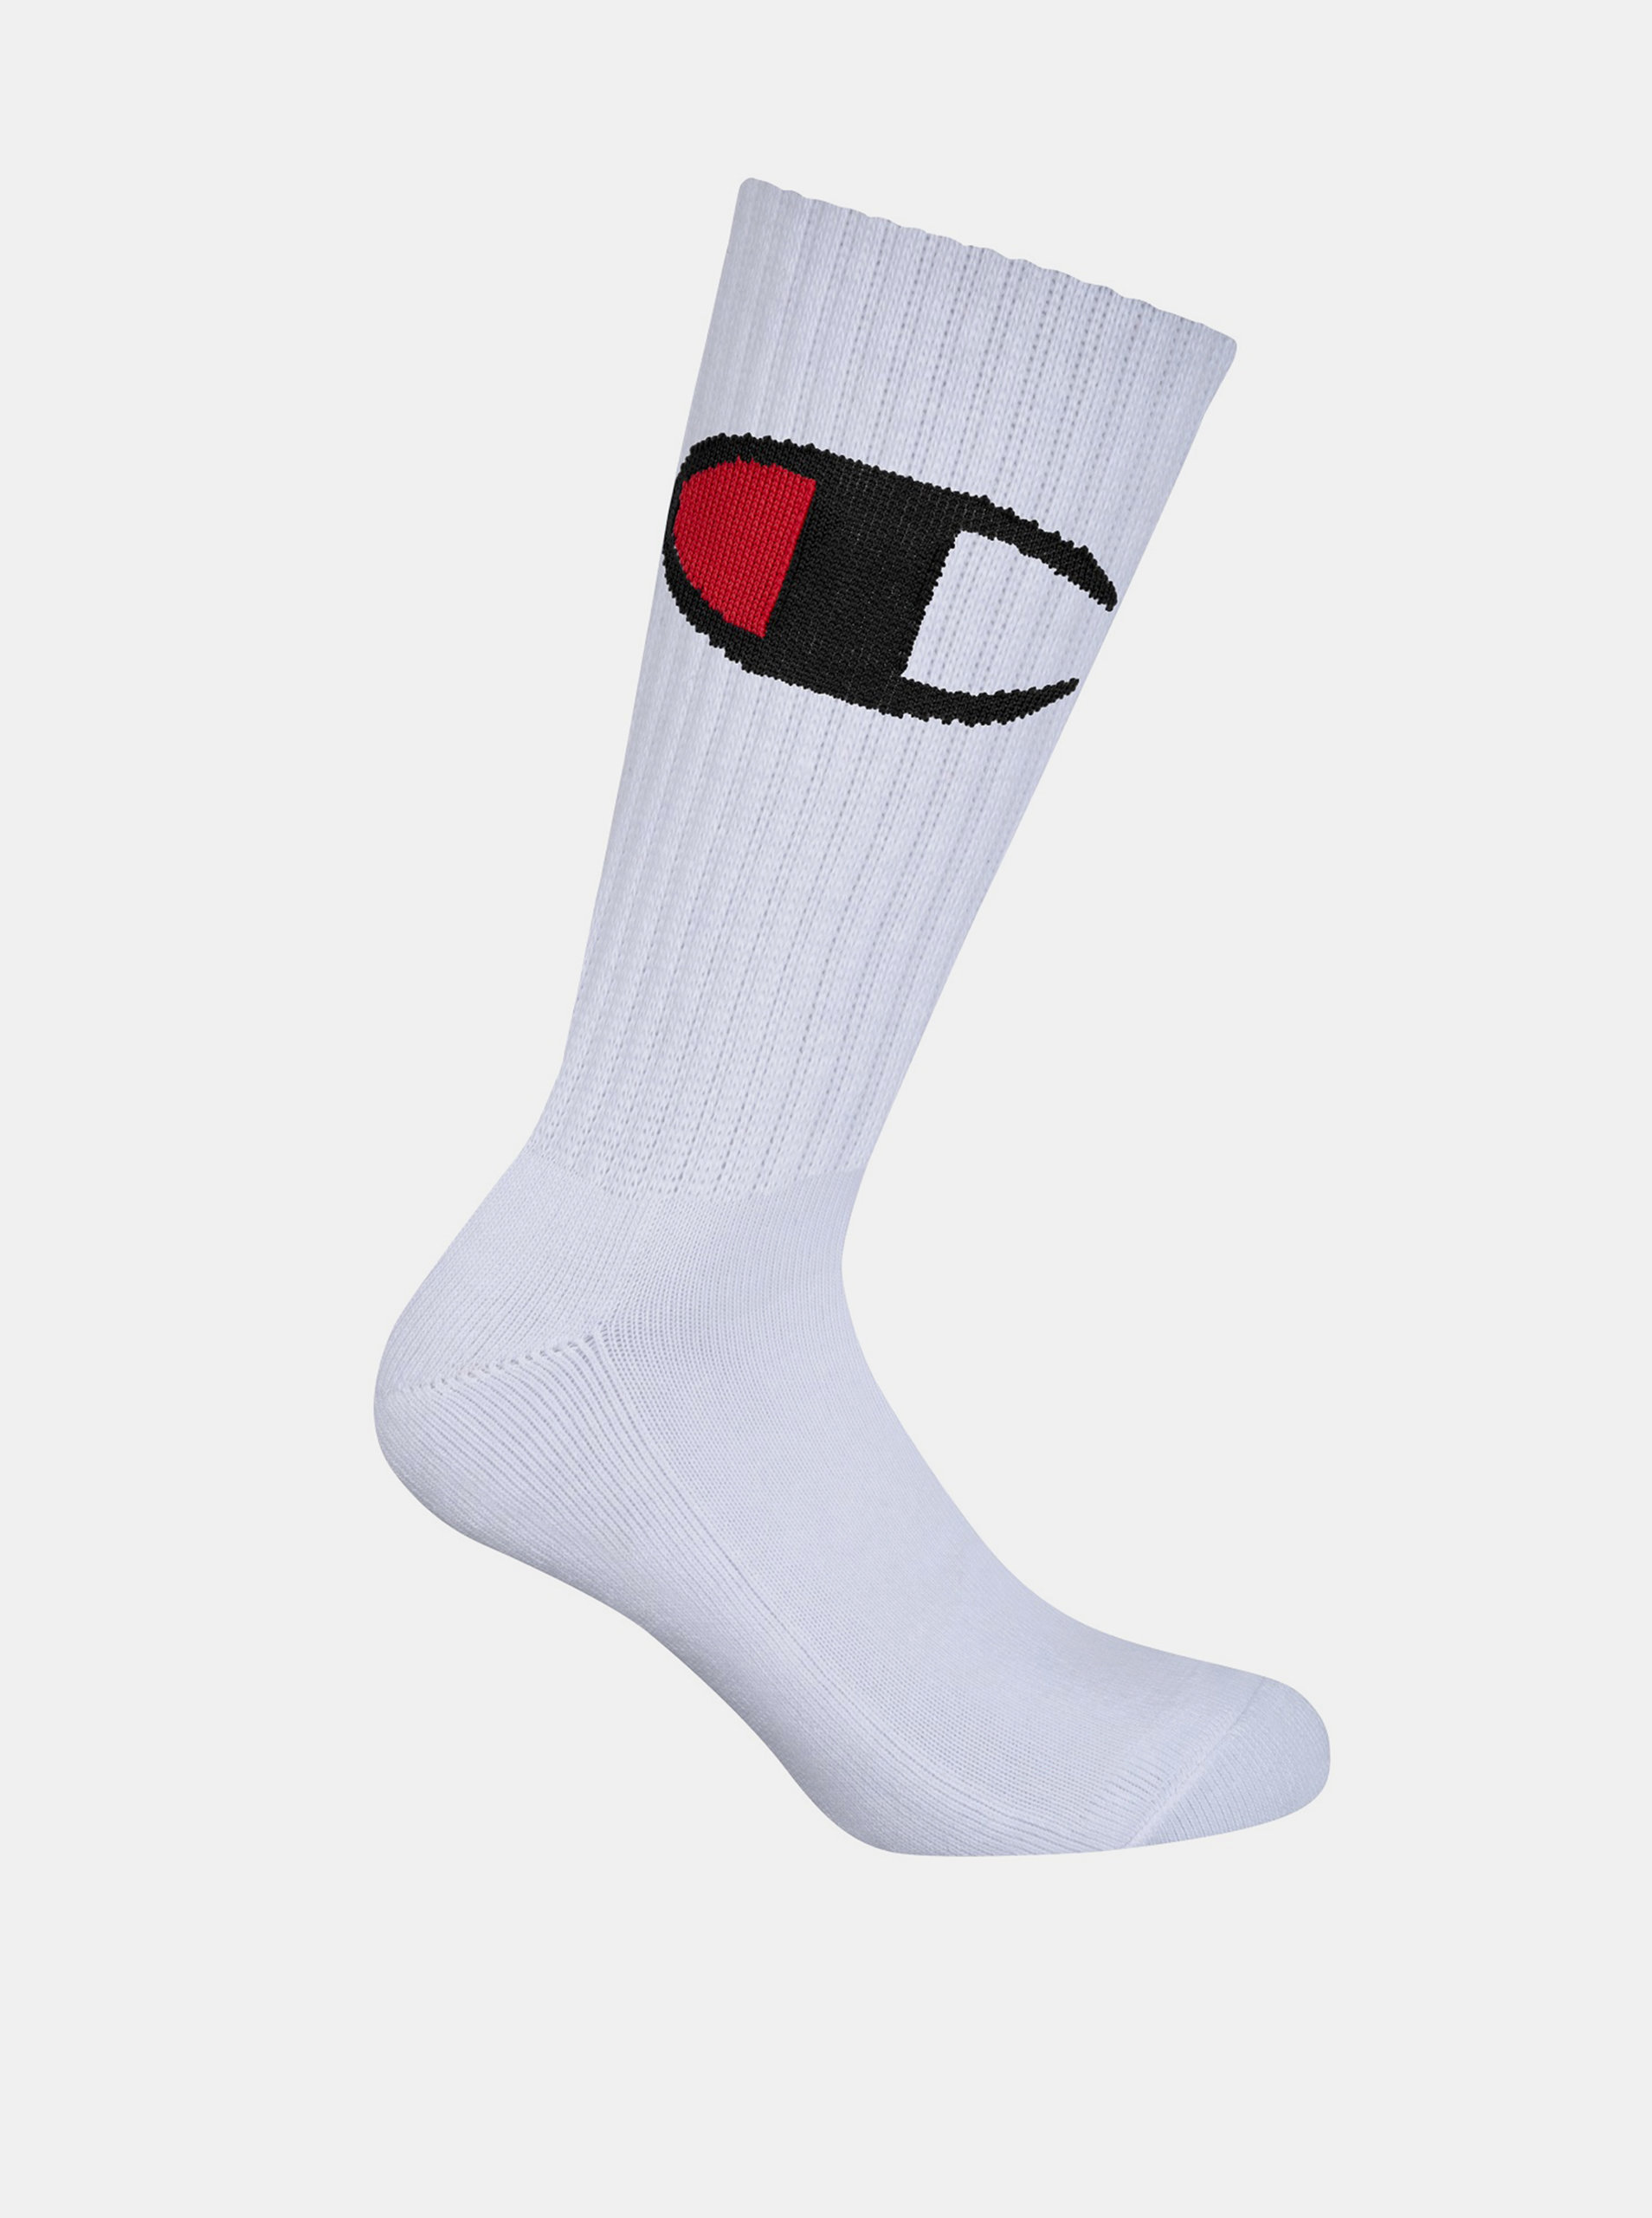 Fotografie CREW SOCKS ROCHESTER BIG C - Vyšší módní sportovní ponožky 1 pár - bílá